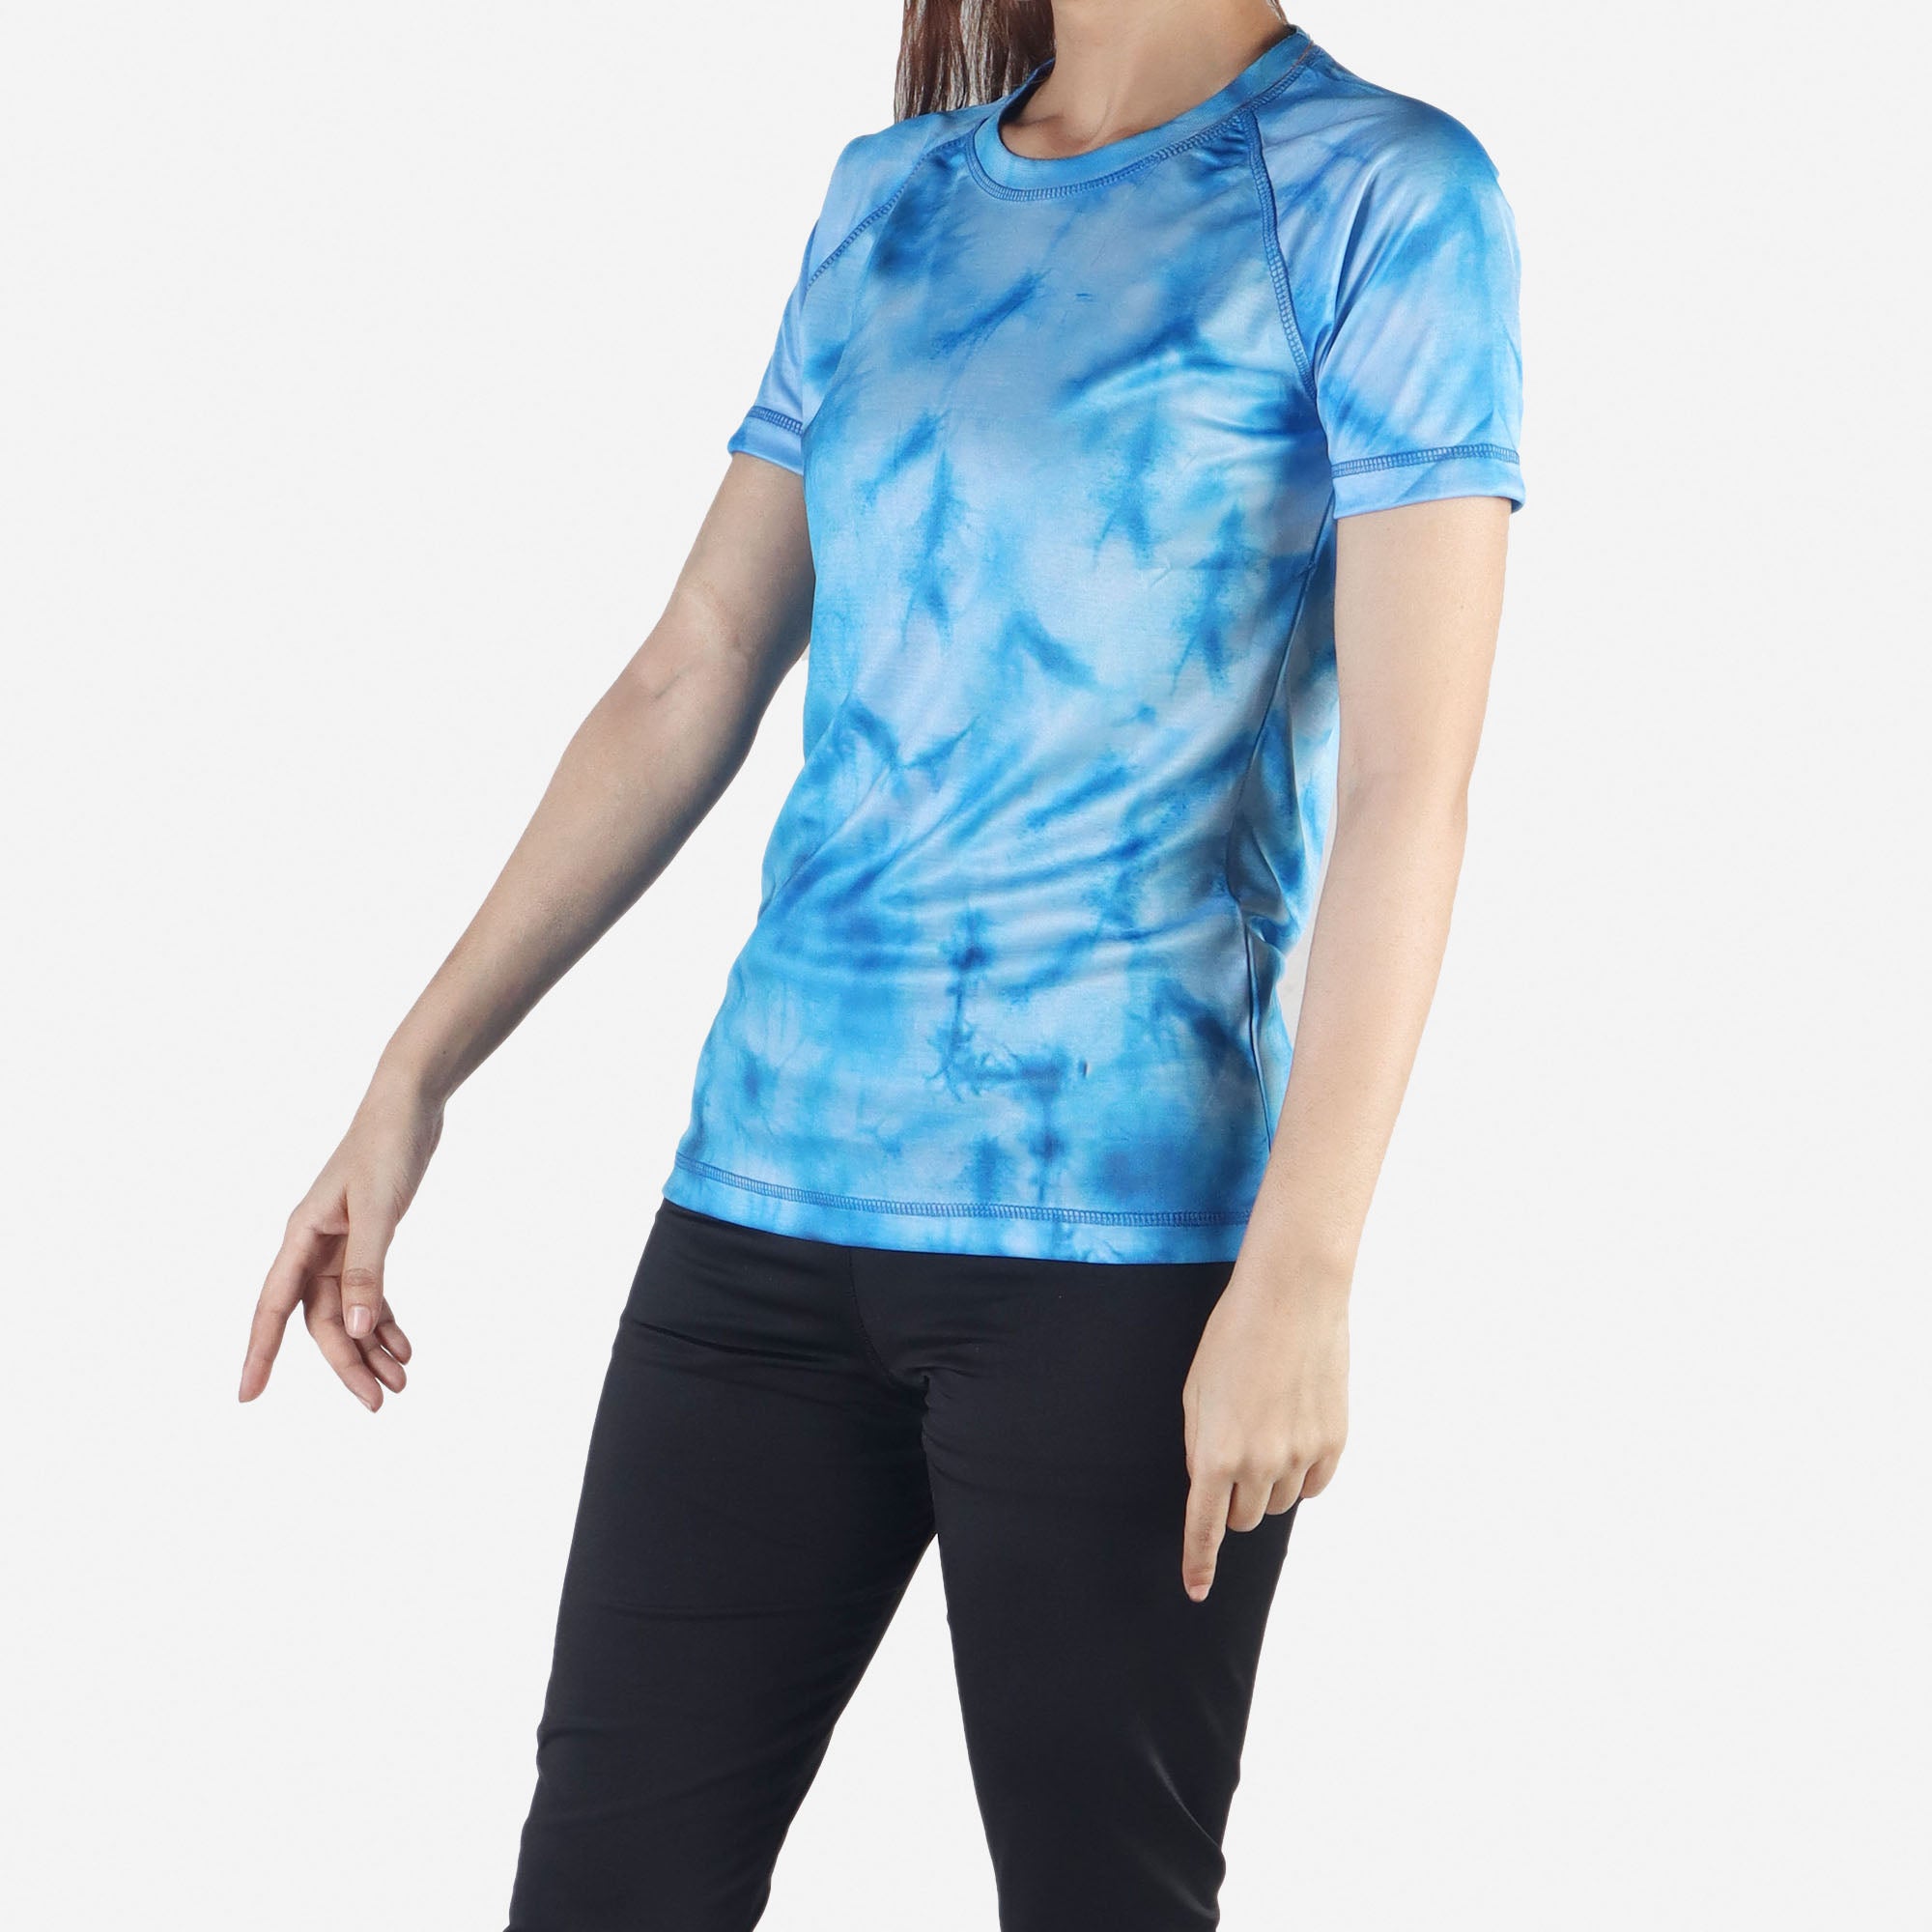 Women’s Short Sleeve Workout Activewear T-shirt